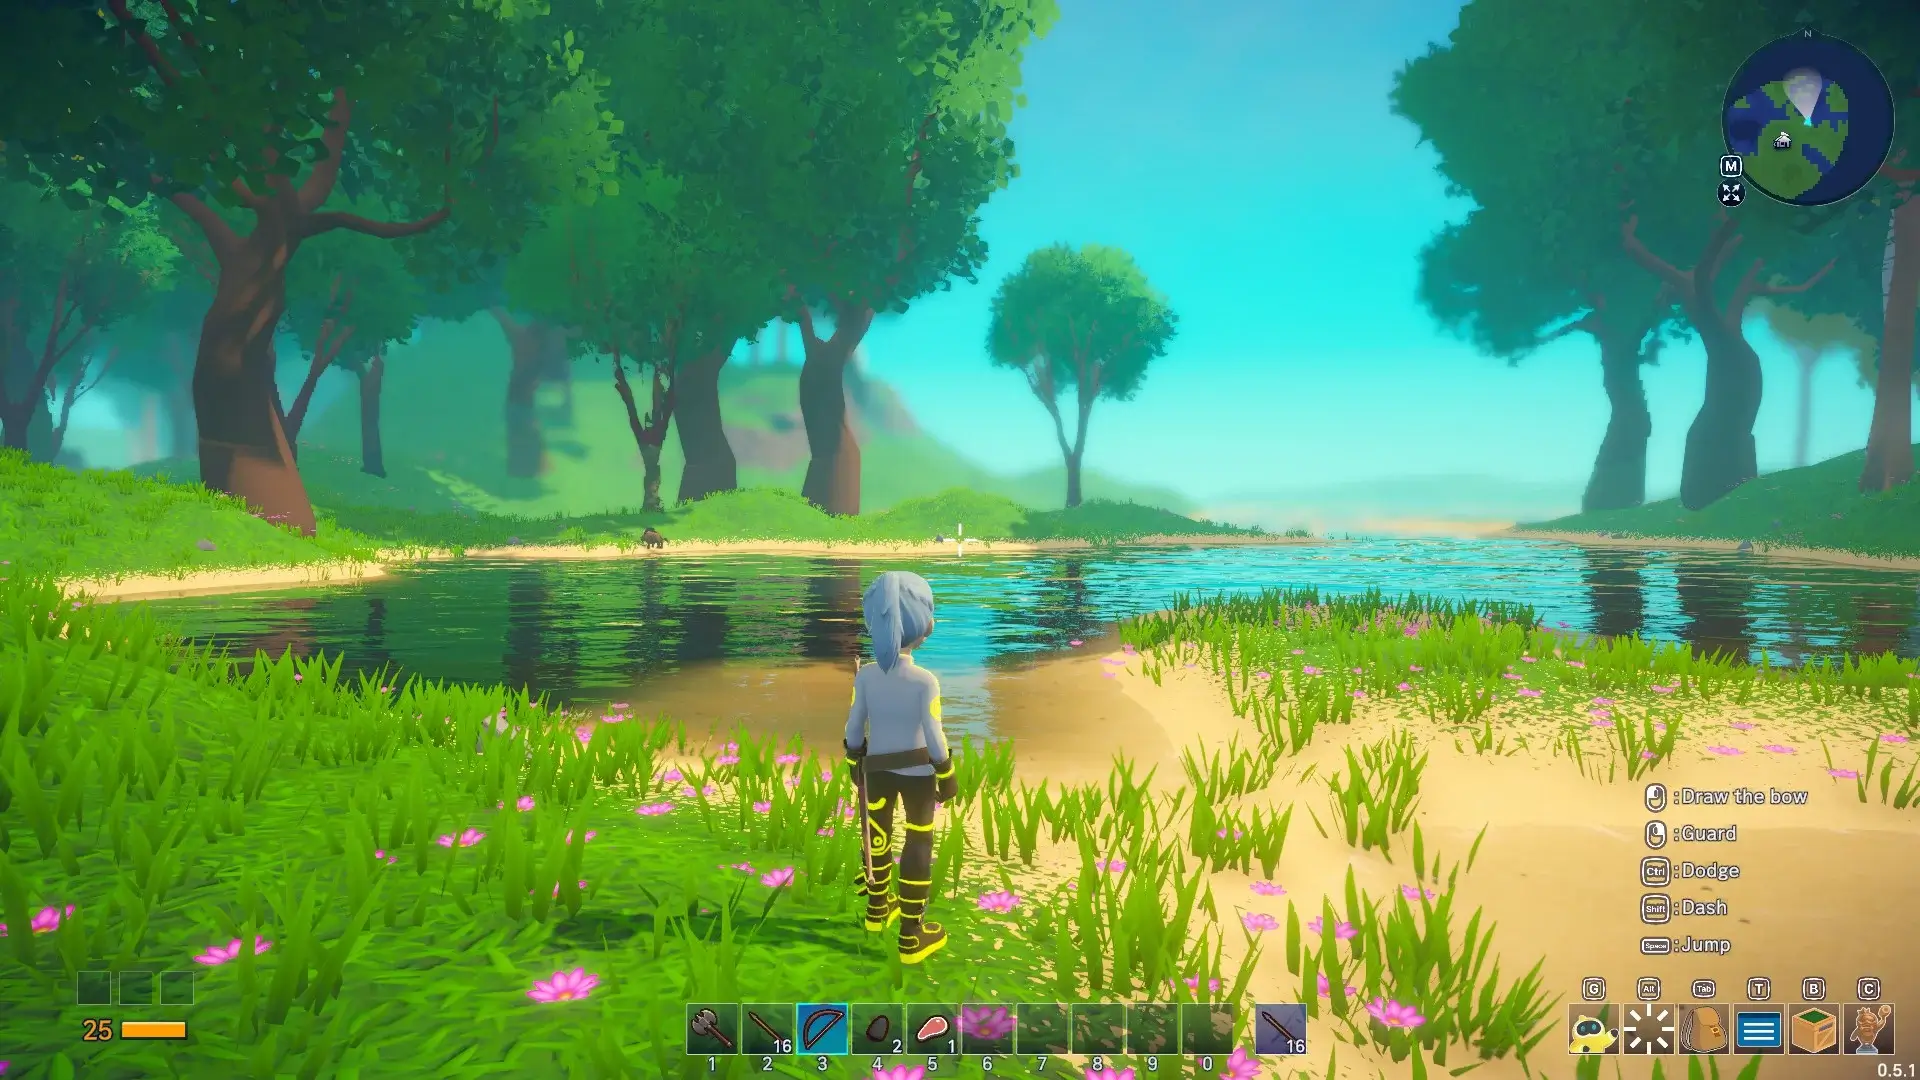 Le personnage du joueur est au centre de l'écran, entouré d'arbres et d'eau depuis la zone de départ du jeu.